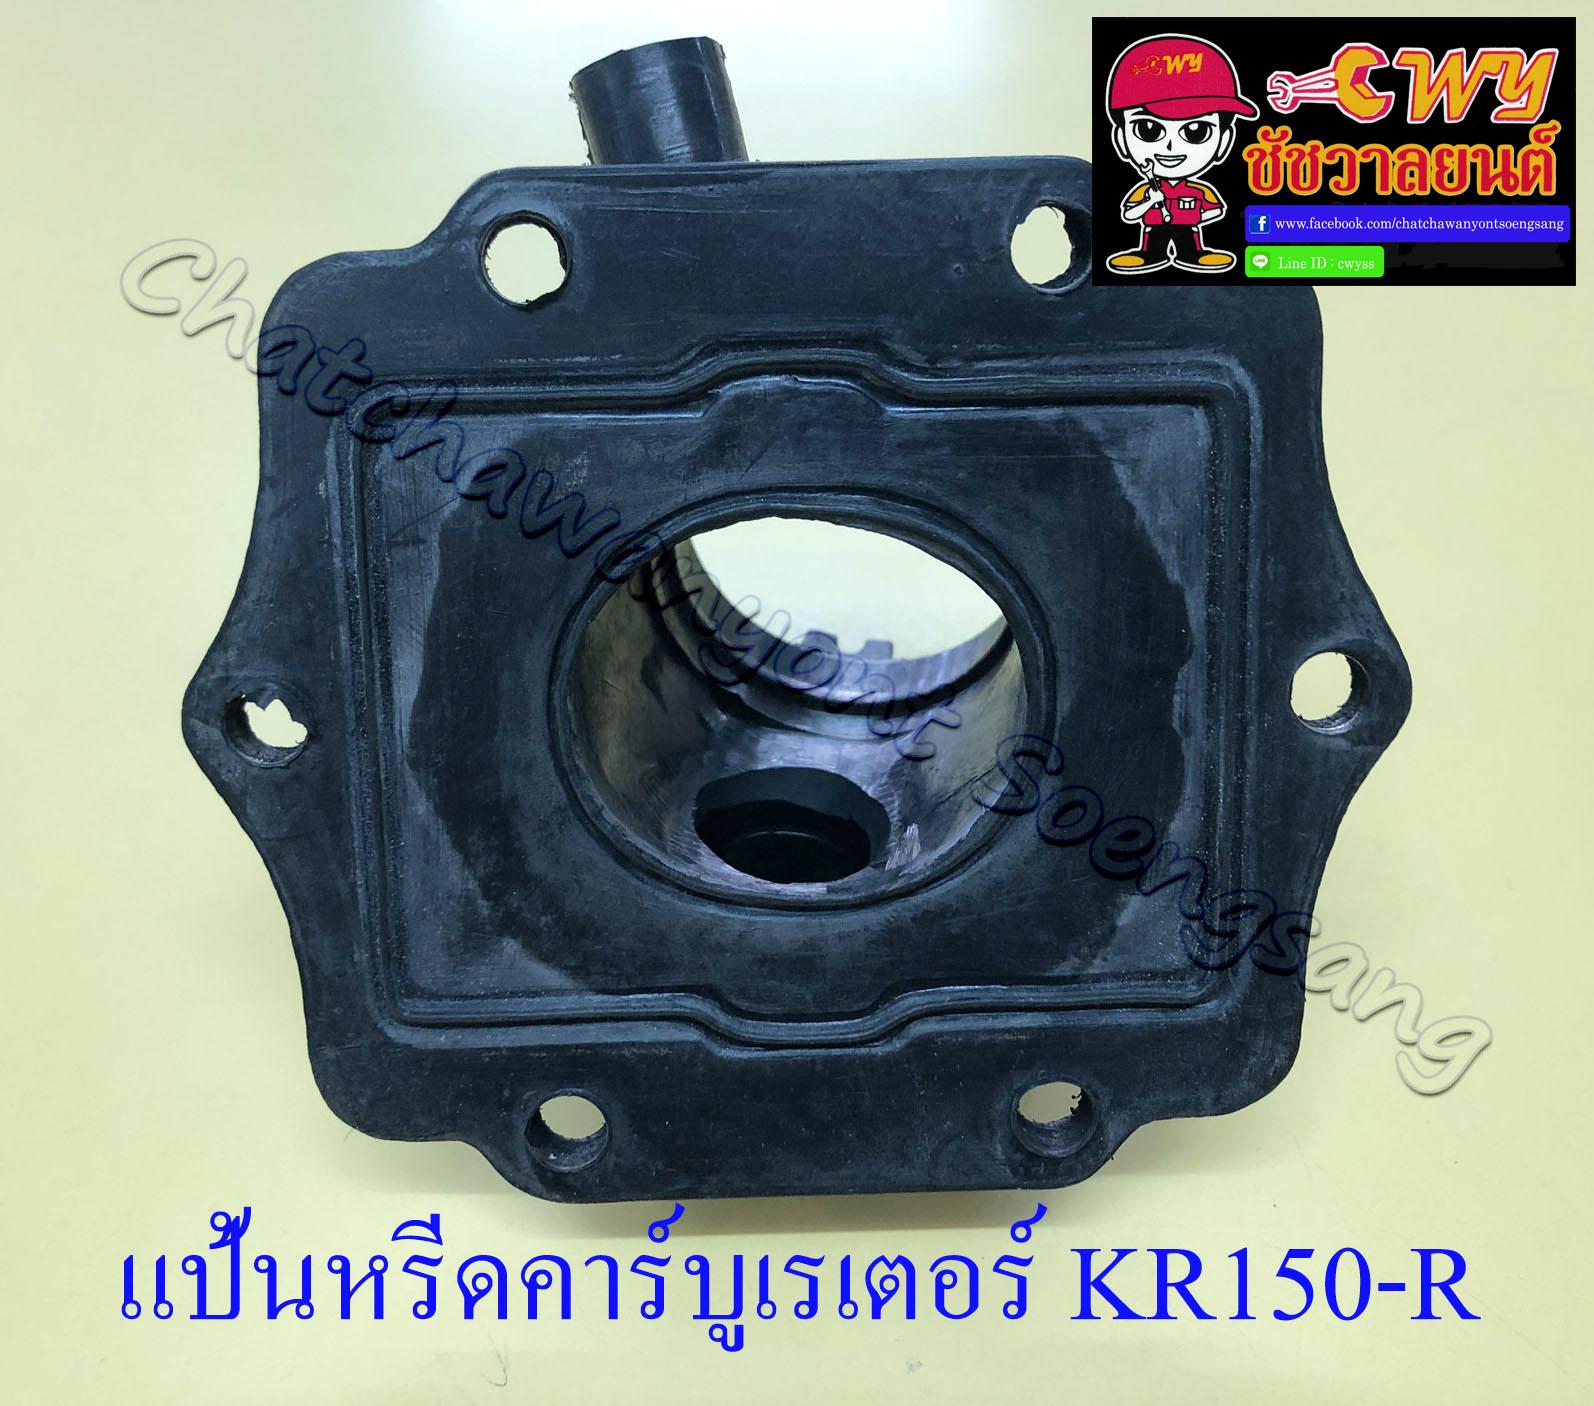 แป้นหรีดคาร์บูเรเตอร์ KR150-R , SERPICO (ปากใหญ่) (4236)